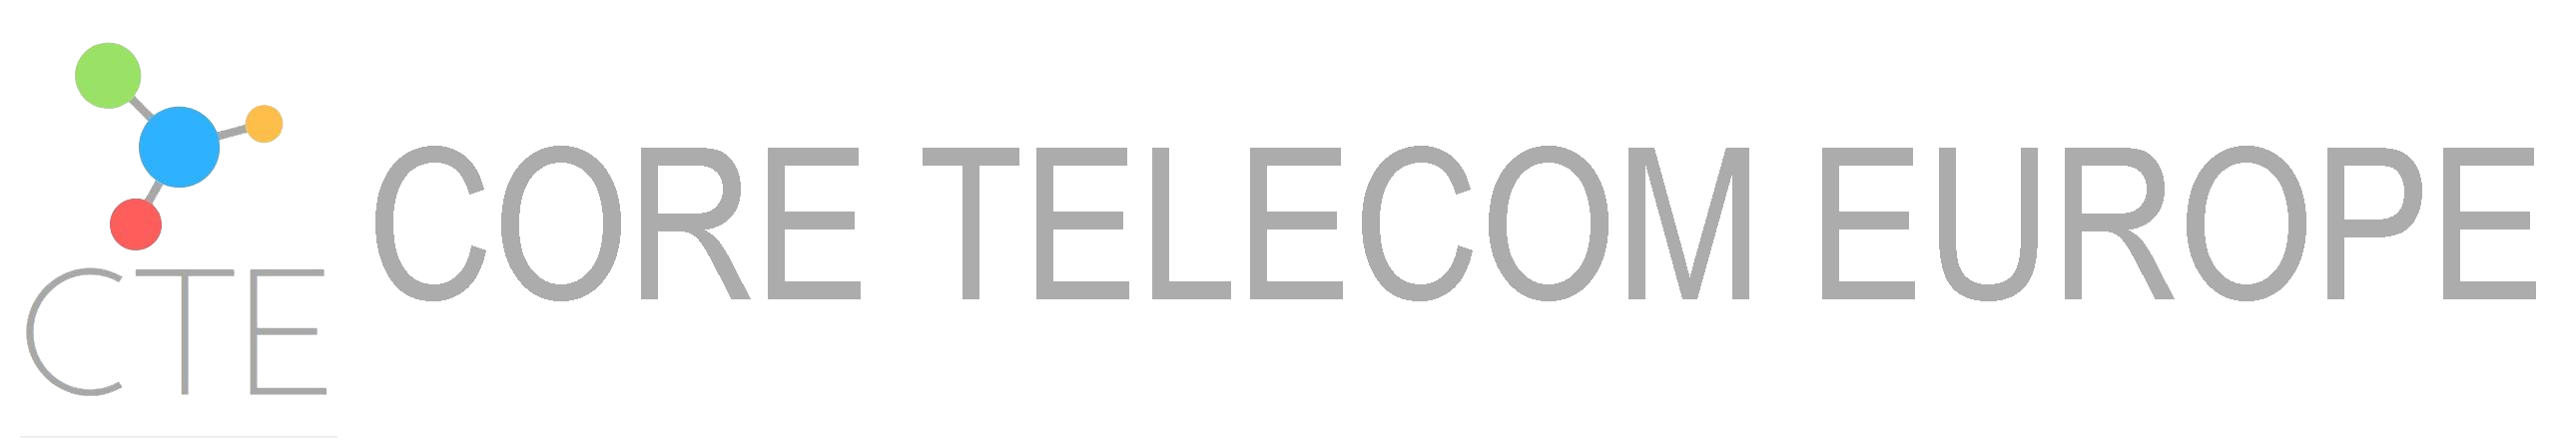 CTE - Core Telecom Europe LTD - London